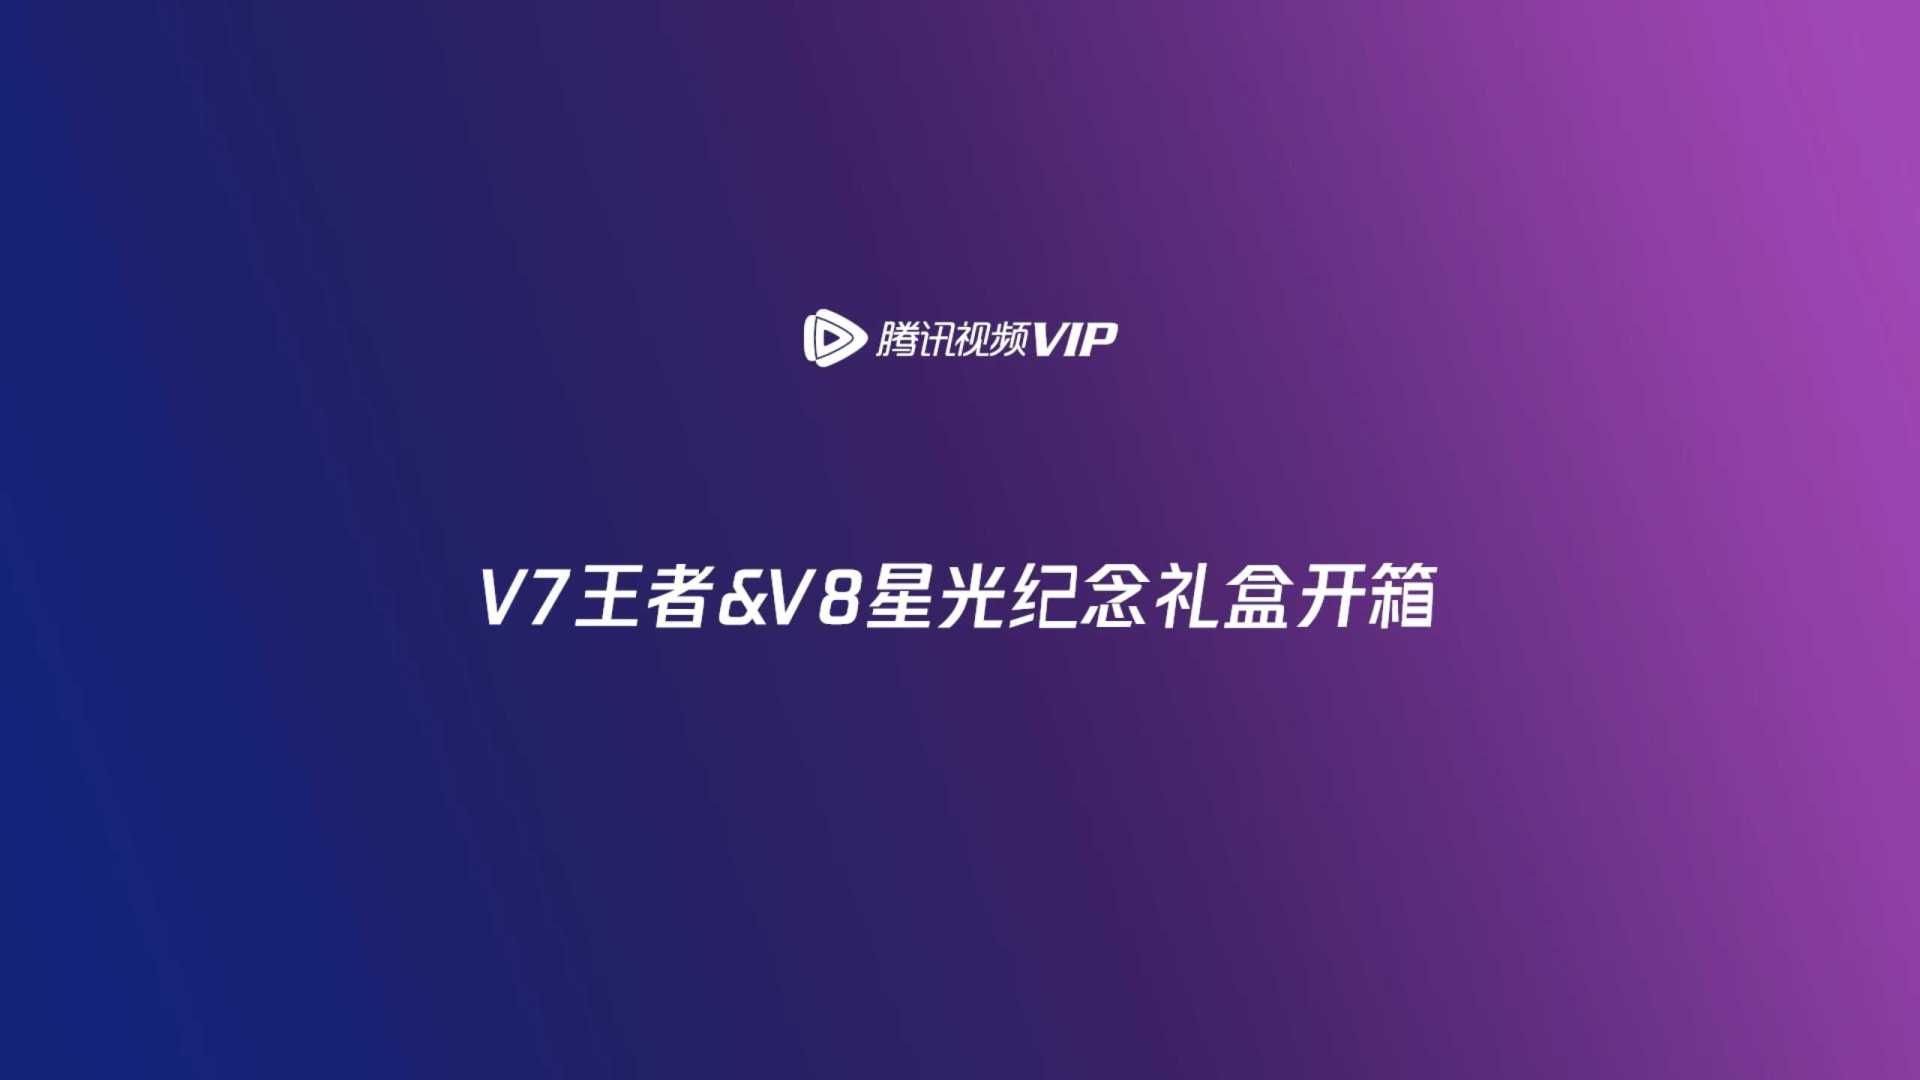 【腾讯视频VIP】2022年度纪念礼盒开箱视频